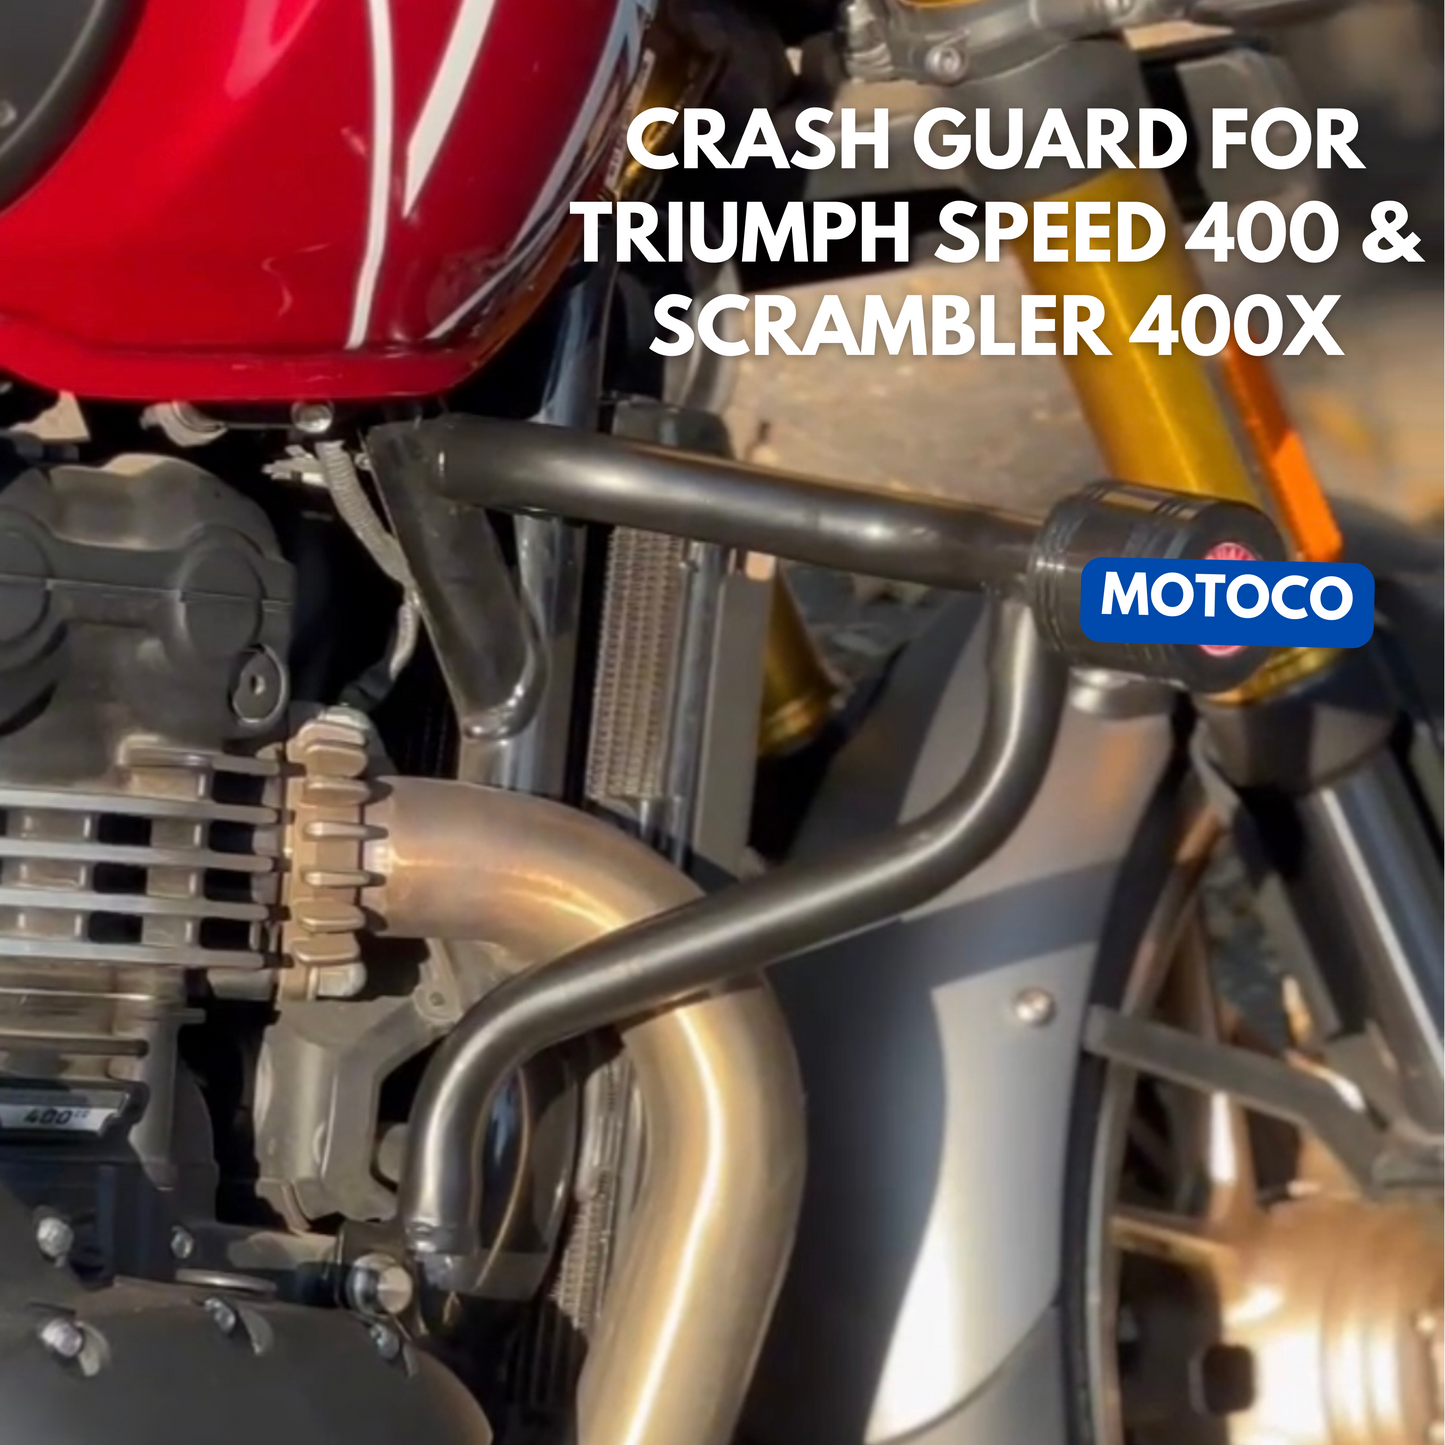 Crash Guard For Triumph Speed 400 & Scrambler 400 X